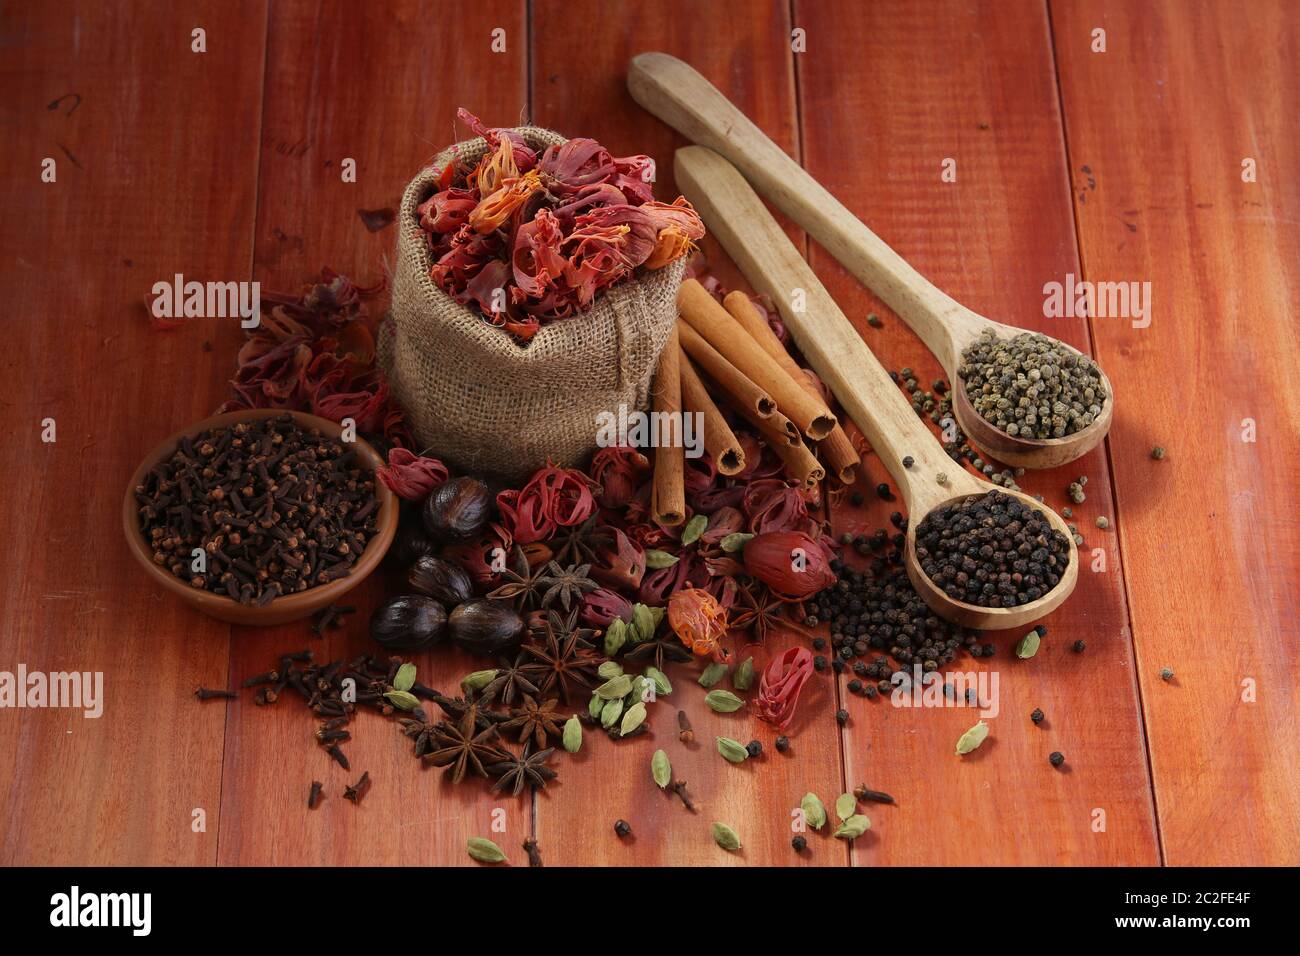 Épices séchées poivre noir,poivre vert,Mace ou fleur de javiithri,muscade,Clove,cannelle,cardamome,Anis étoilé disposés sur une surface en bois Banque D'Images